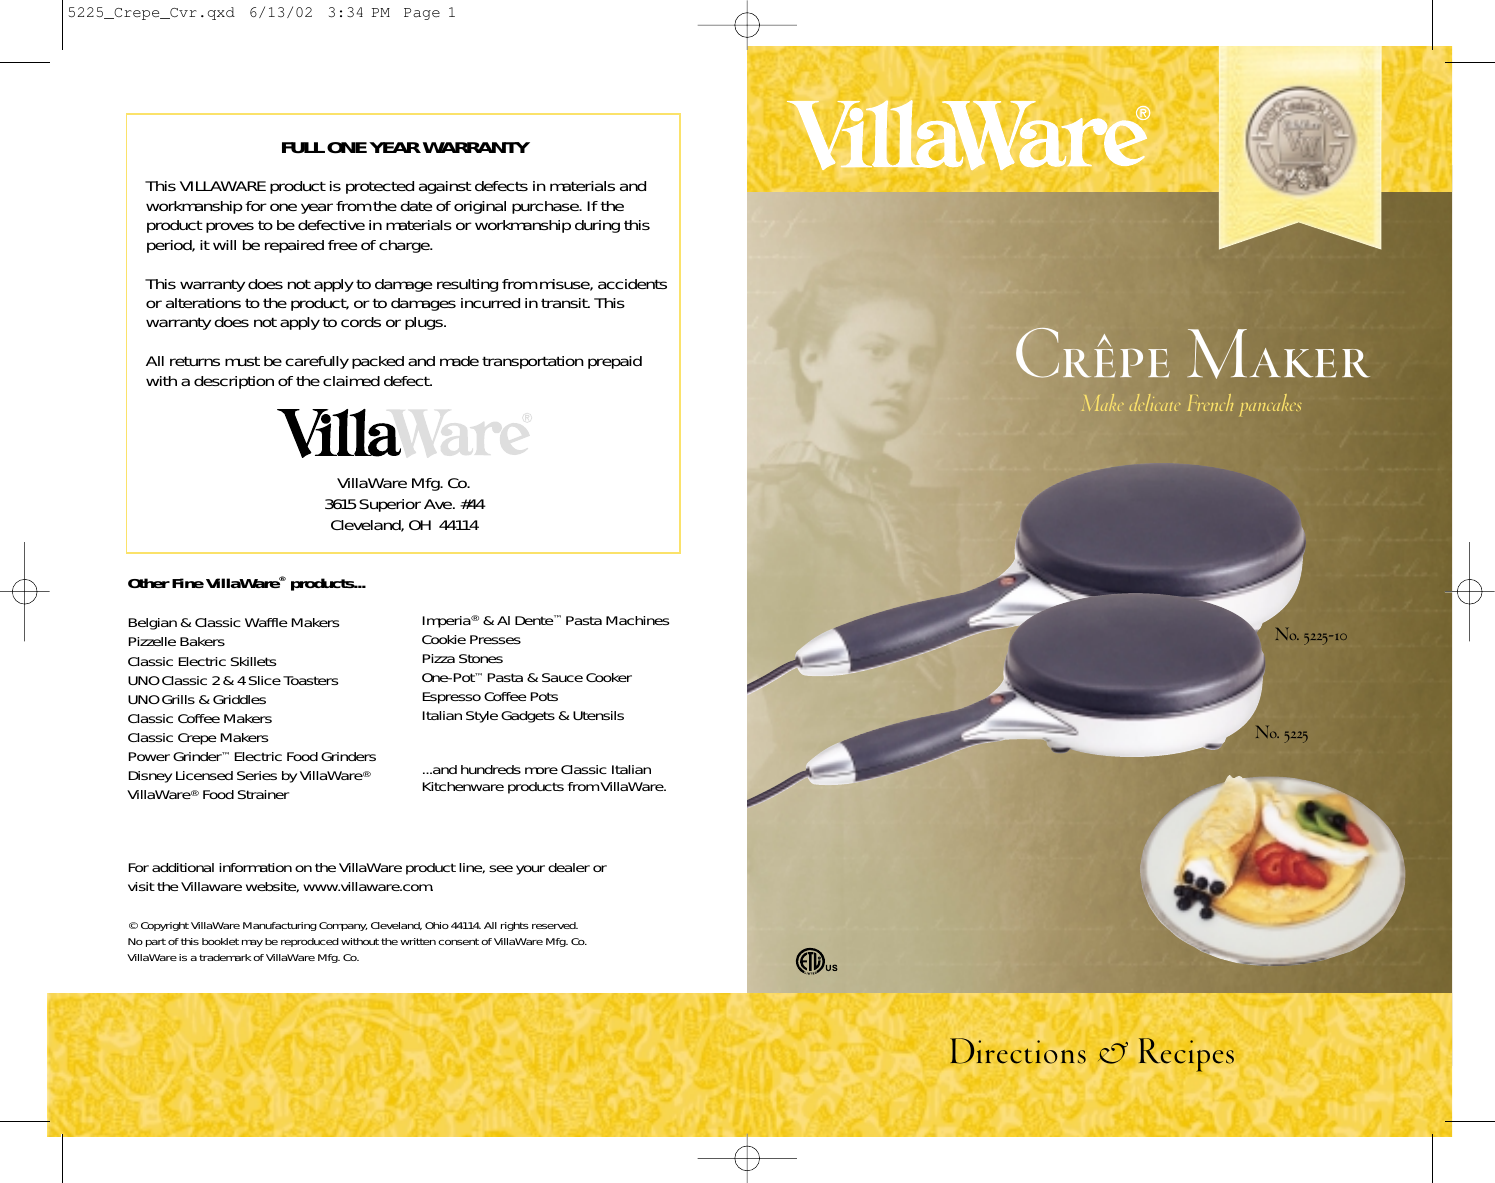 Page 1 of 8 - Villaware Villaware-Crpe-Maker-Users-Manual- #5225 Crepe Maker Booklet  Villaware-crpe-maker-users-manual